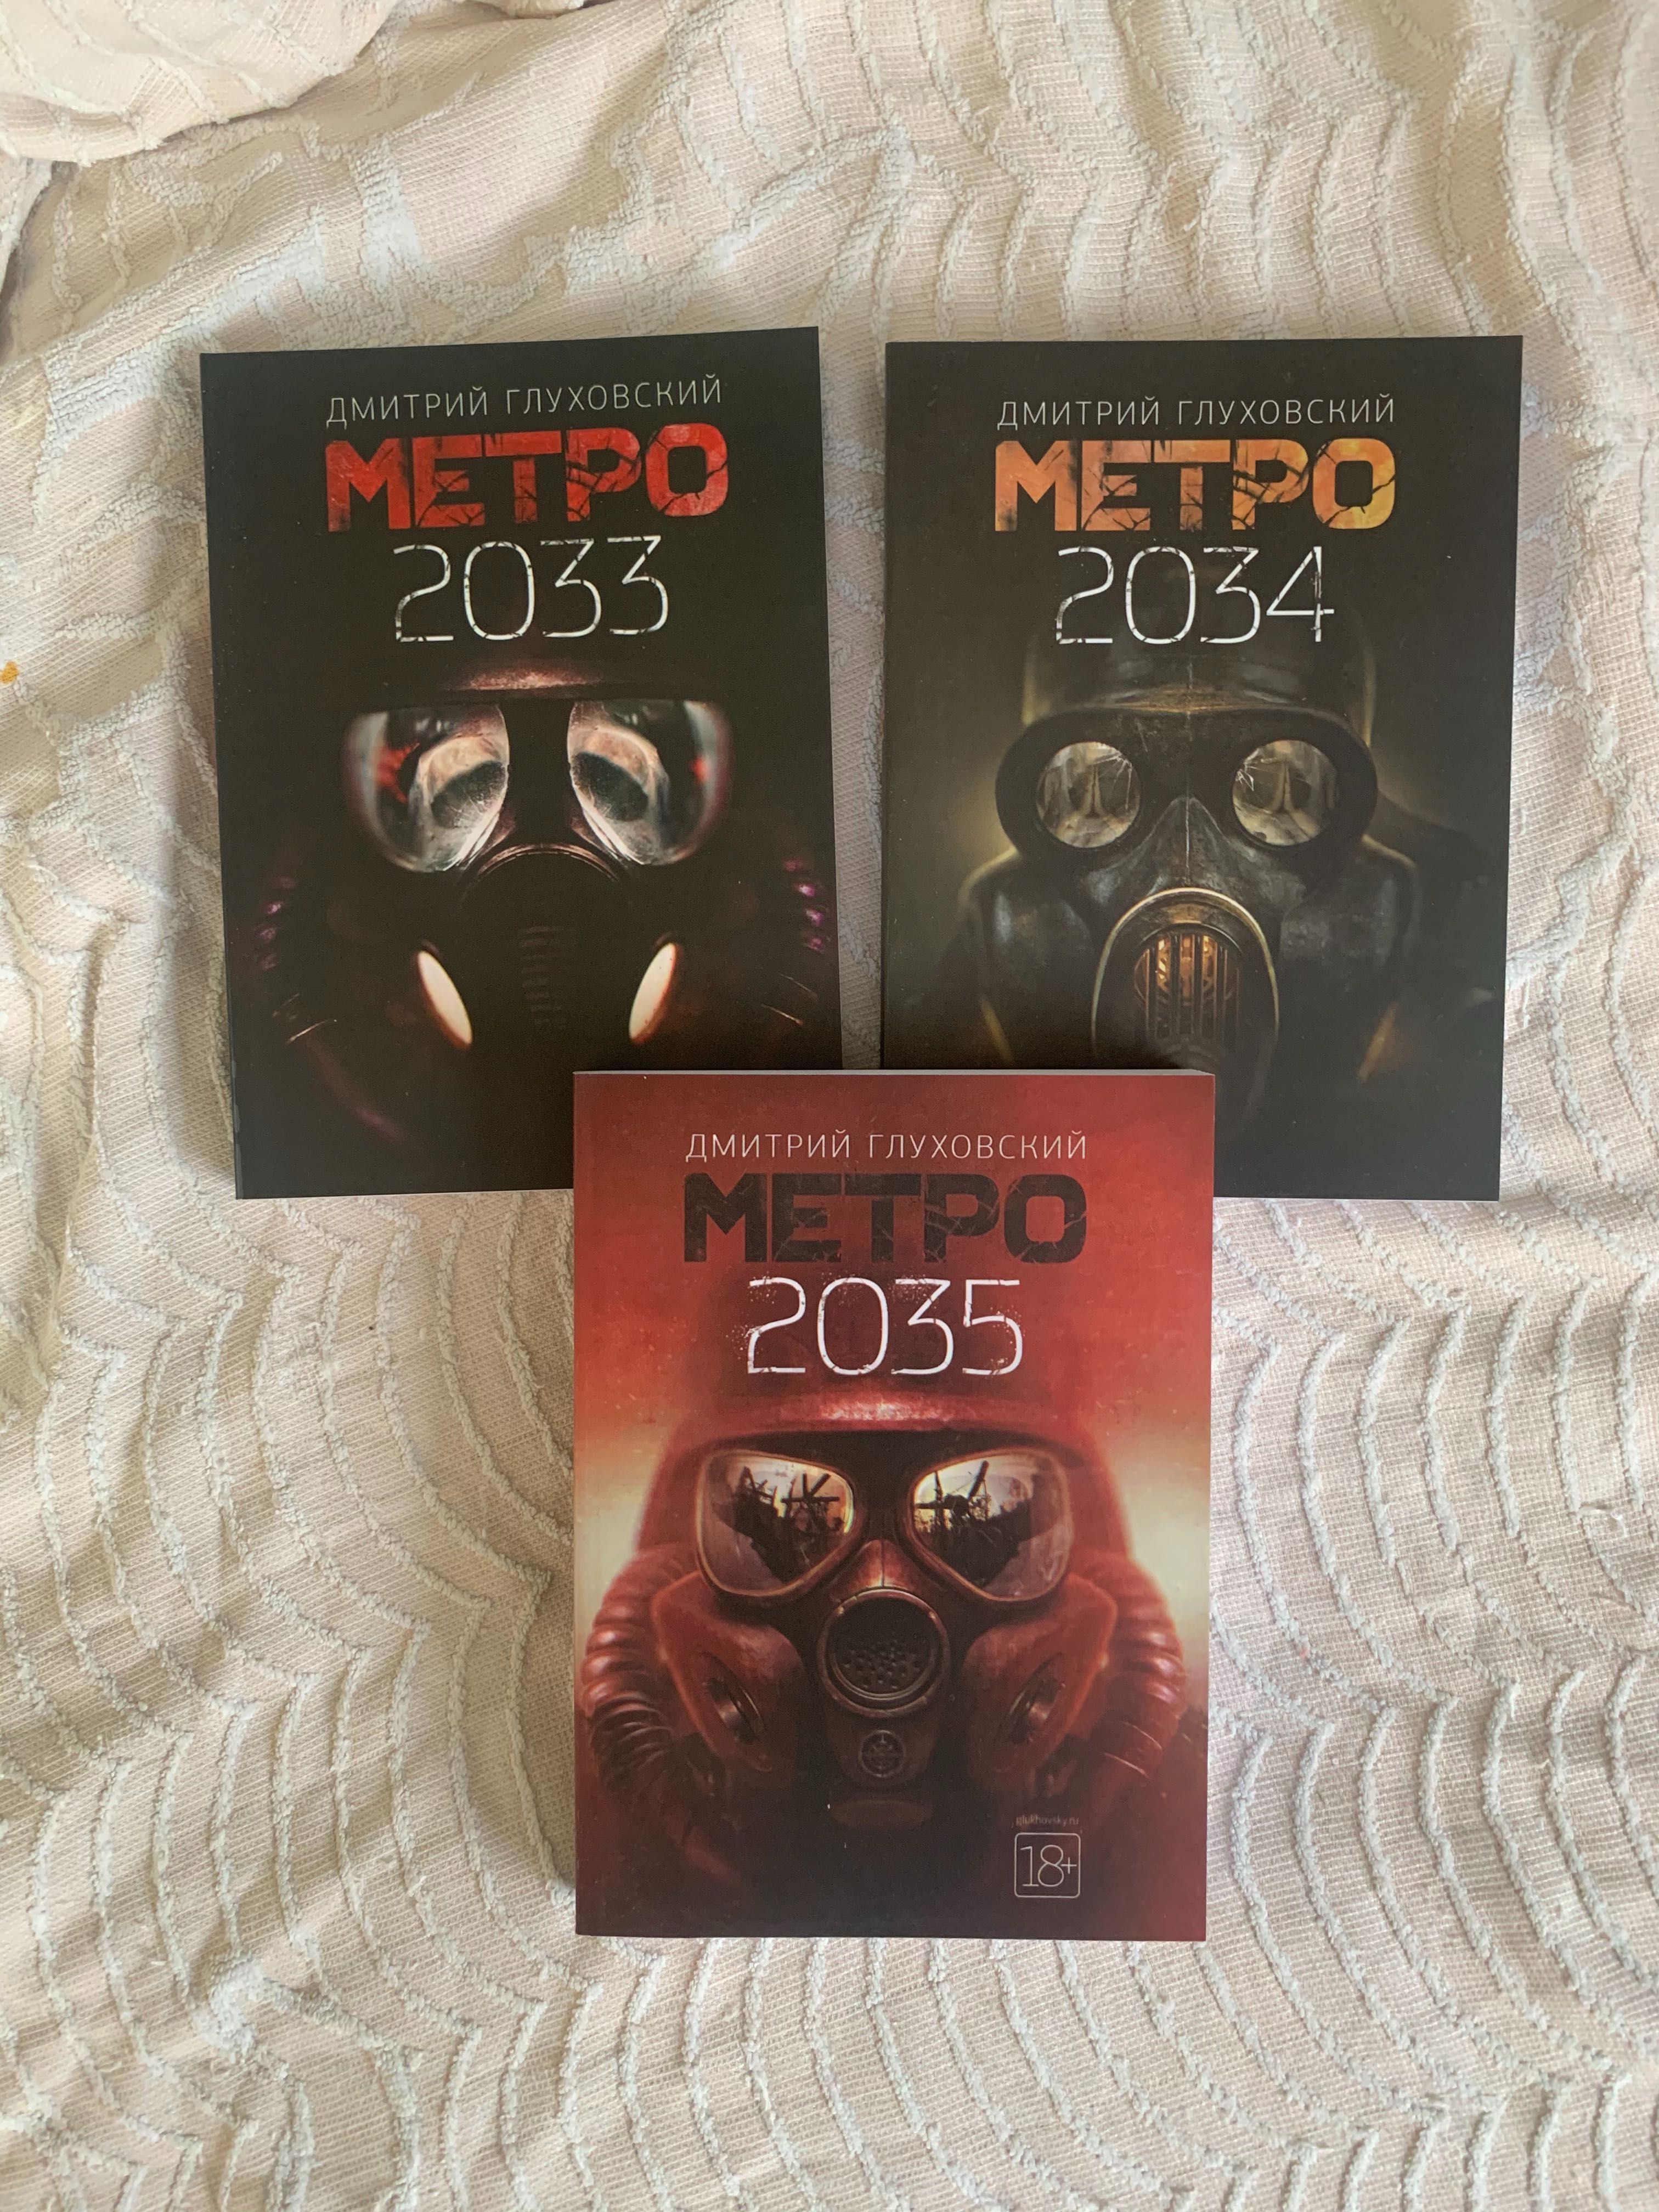 Метро 2033, 2034, 2035 (Д. Глуховский)